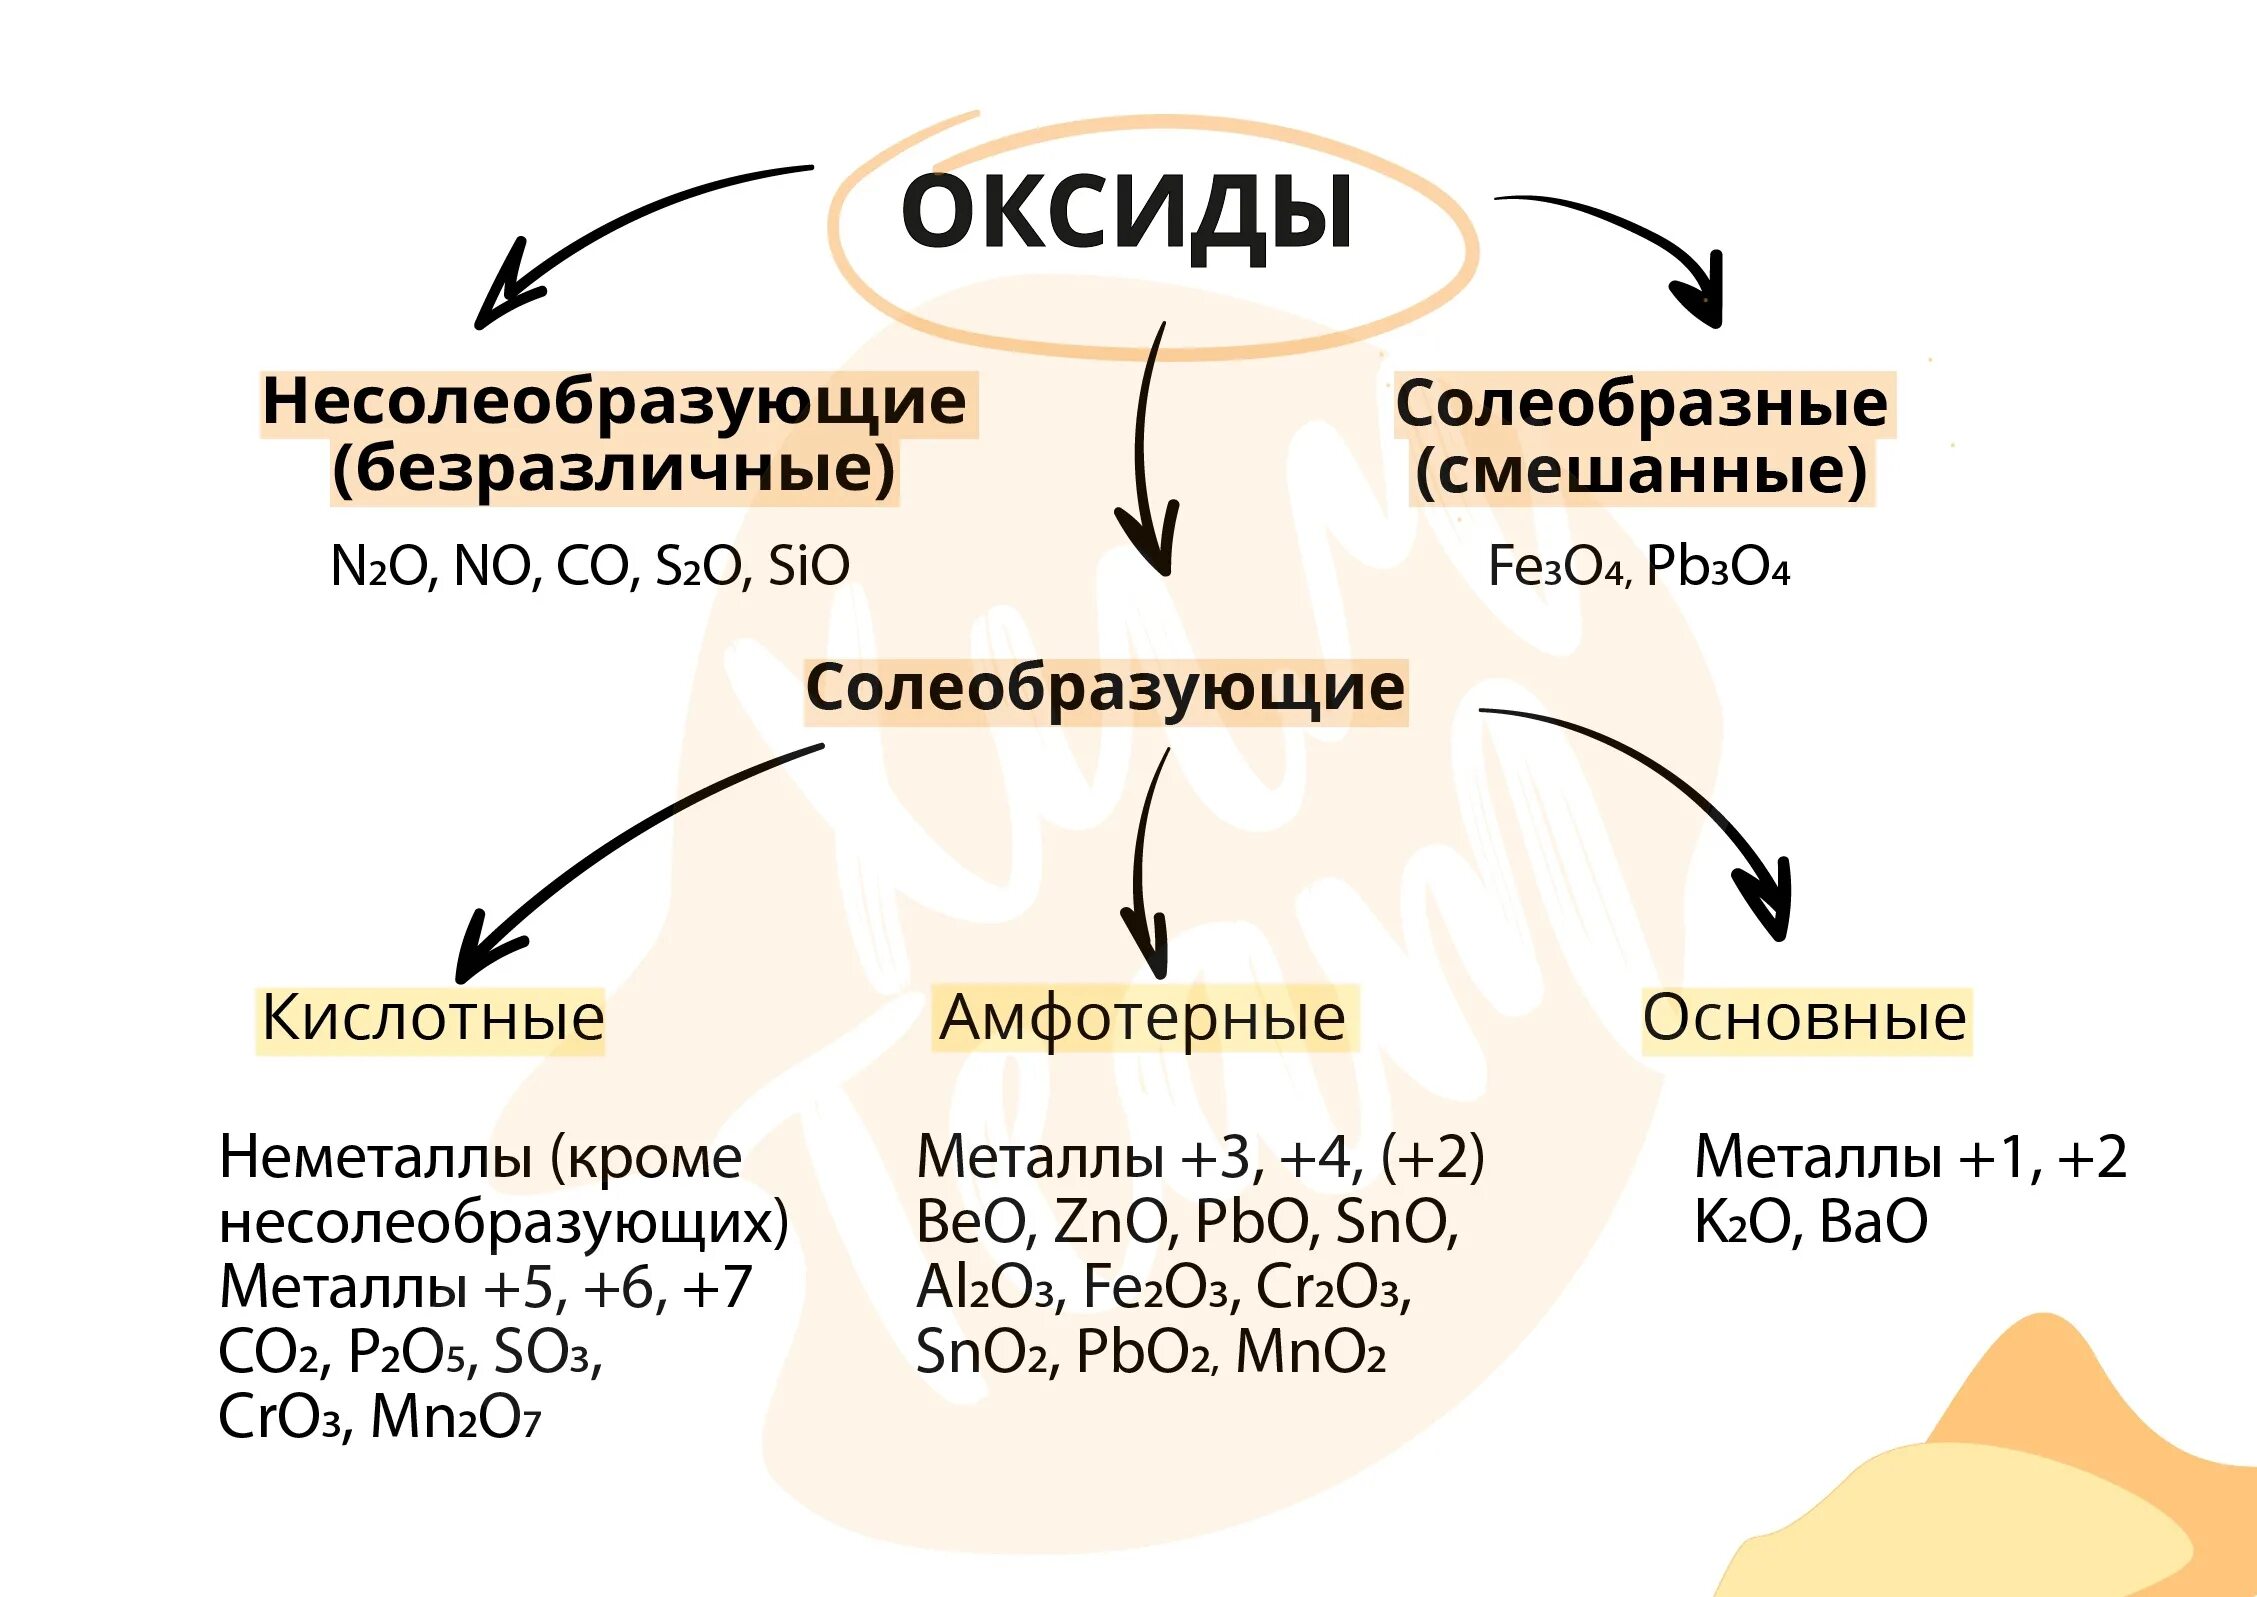 Fe2o3 основный или кислотный. Несолеобразующие оксиды. Примеры несолеобразующих оксидов. Классификация оксидов несолеобразующие. Основные оксиды и несолеобразующие оксиды.